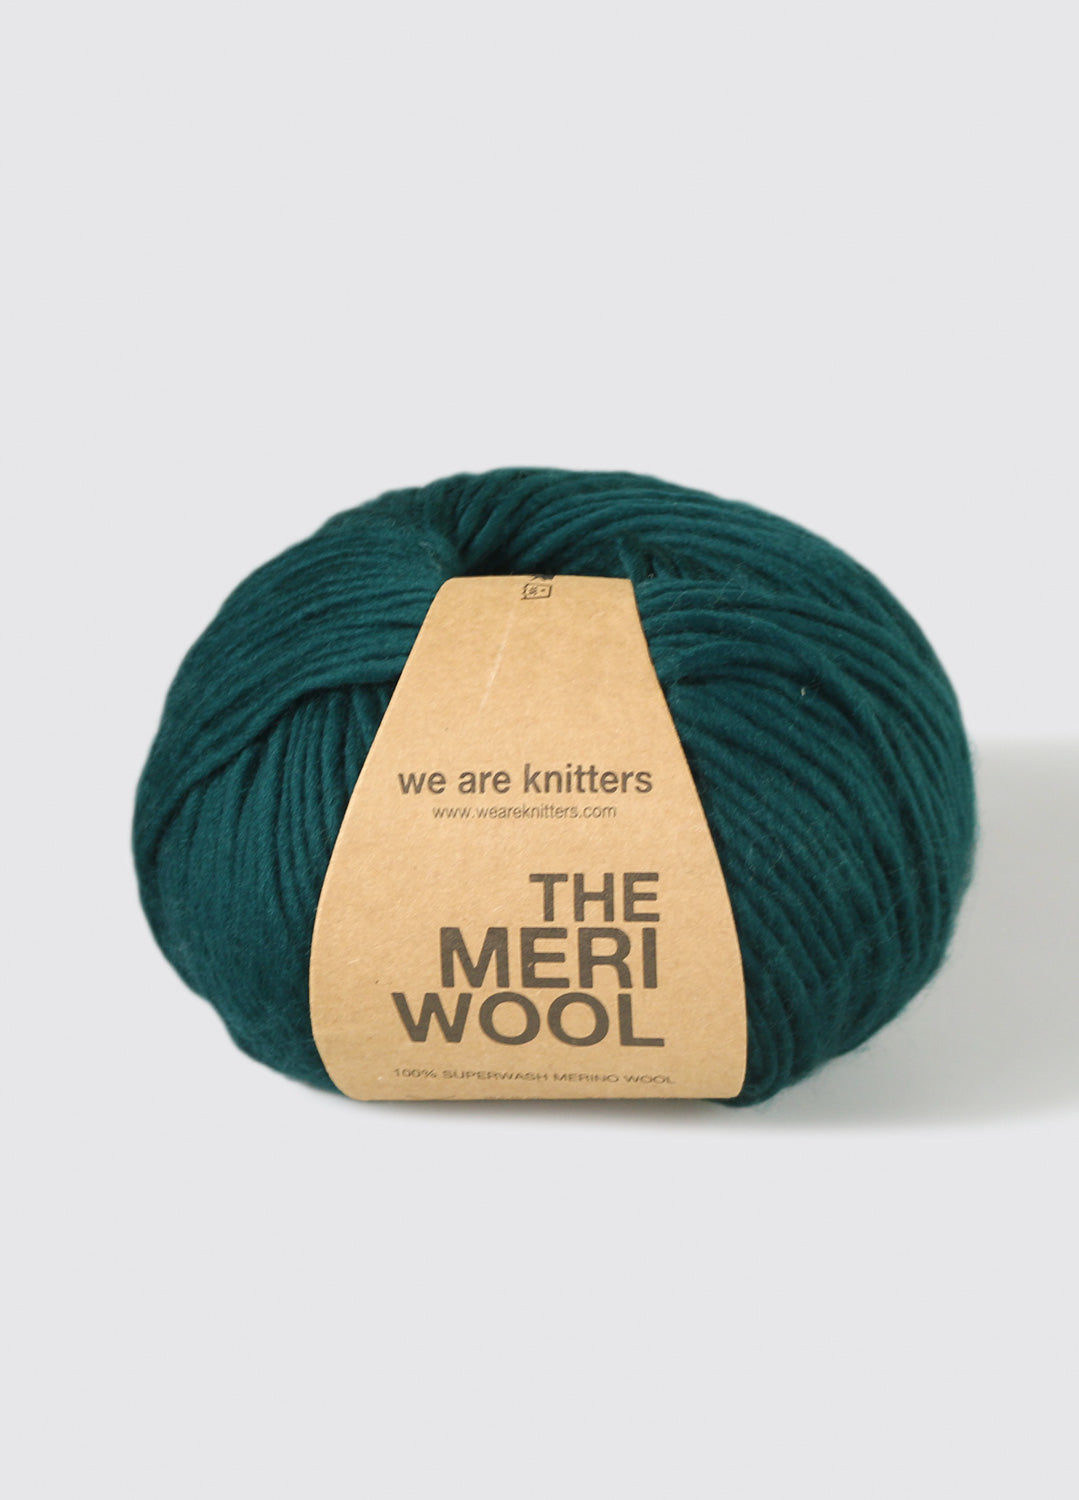 Merino – We are knitters